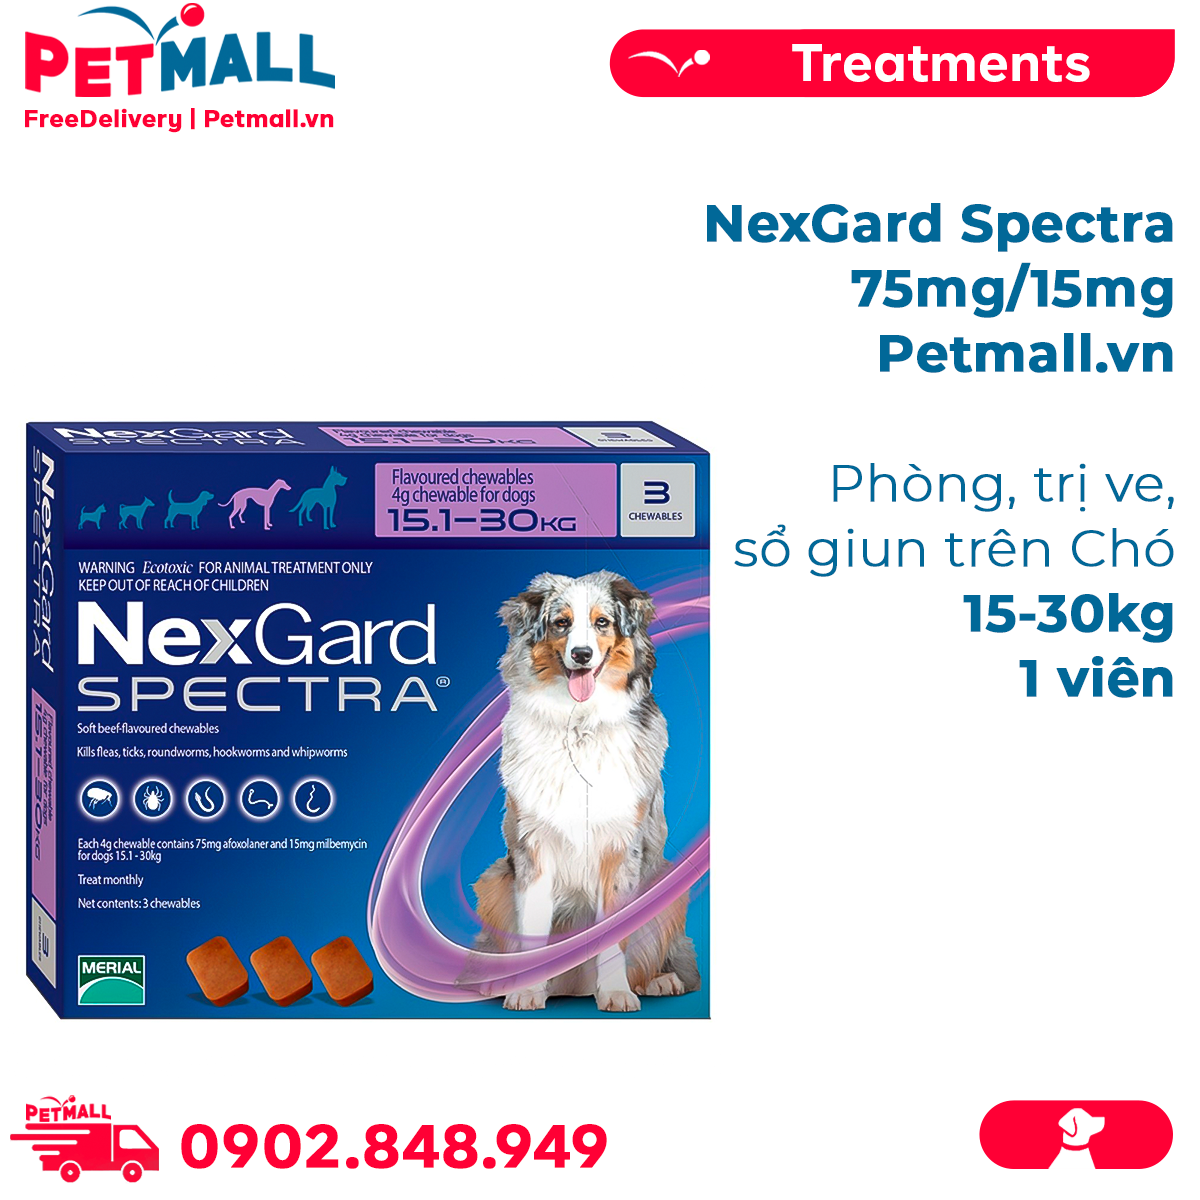 NexGard Spectra 75mg/15mg Phòng trị ve sổ giun trên Chó 15-30kg - 1viên Petmall